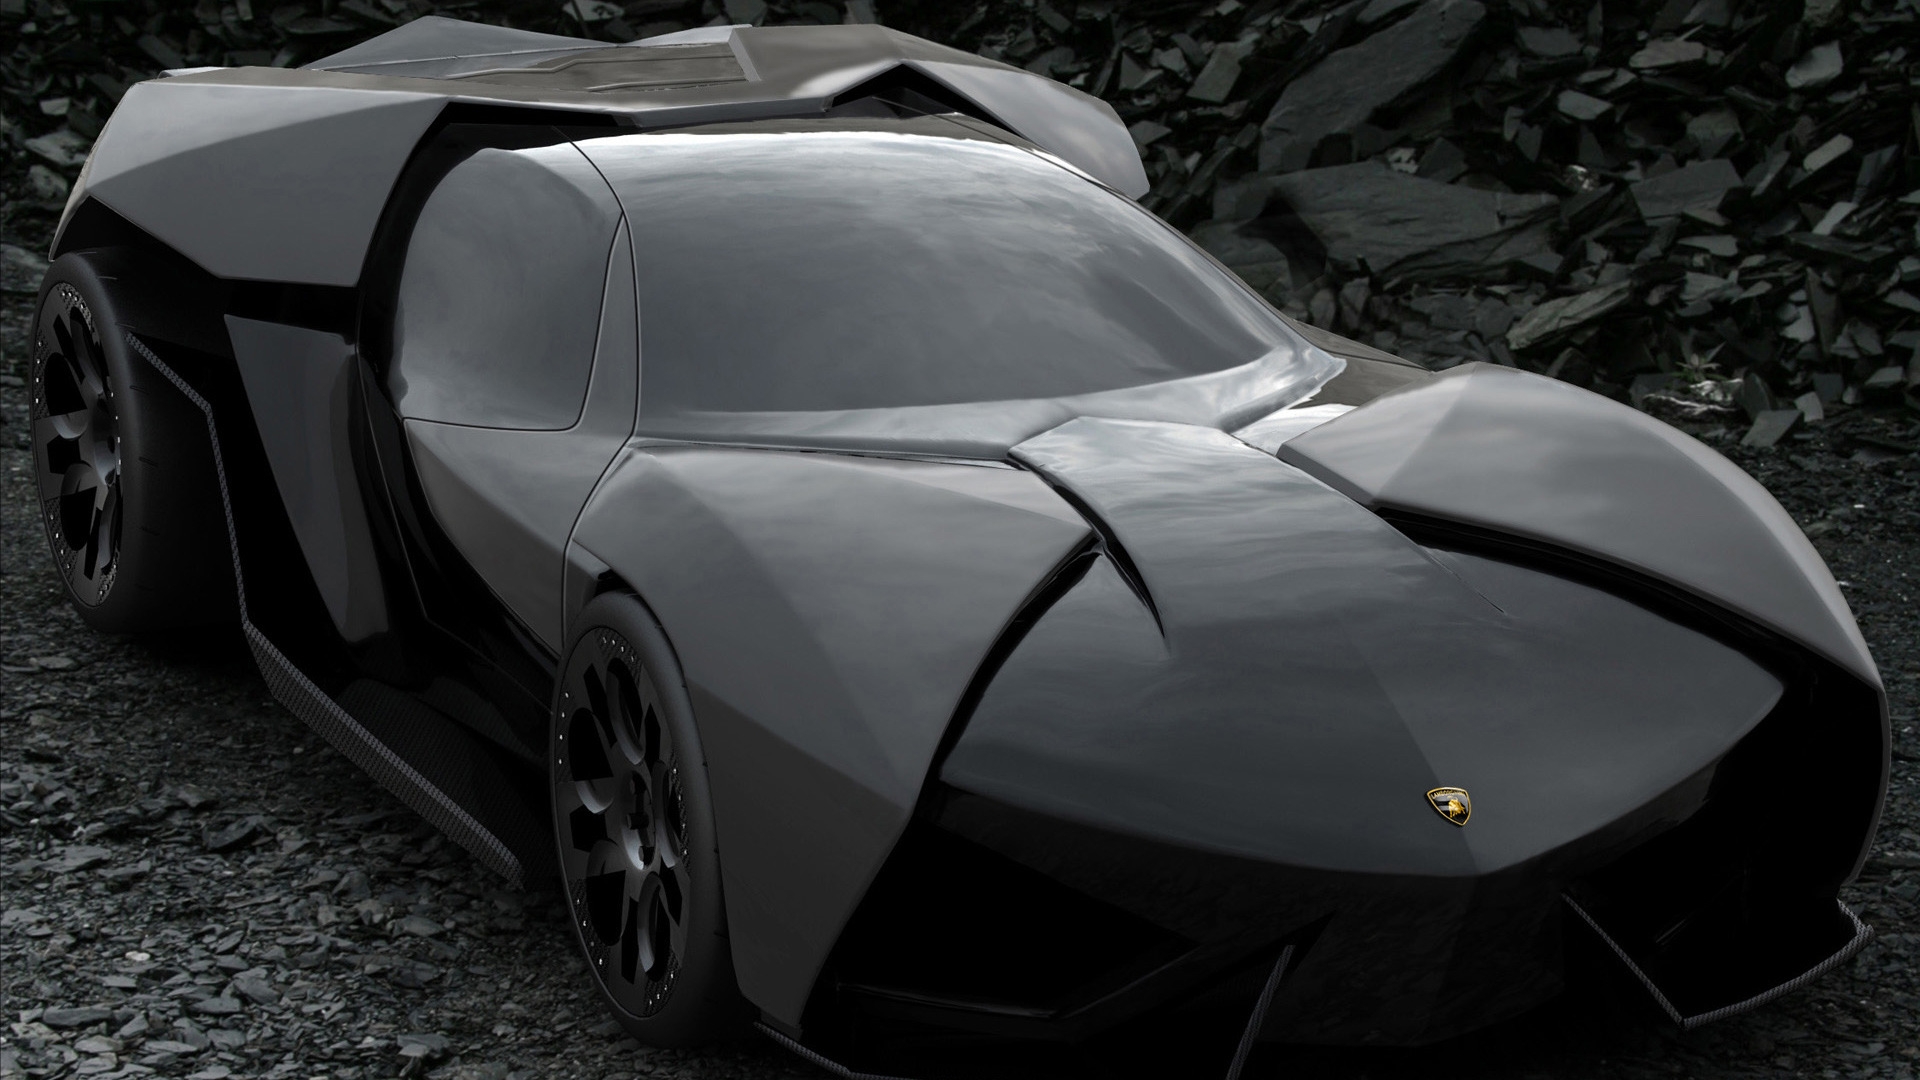 Lamborghini Ankonian Concept for 1920 x 1080 HDTV 1080p resolution